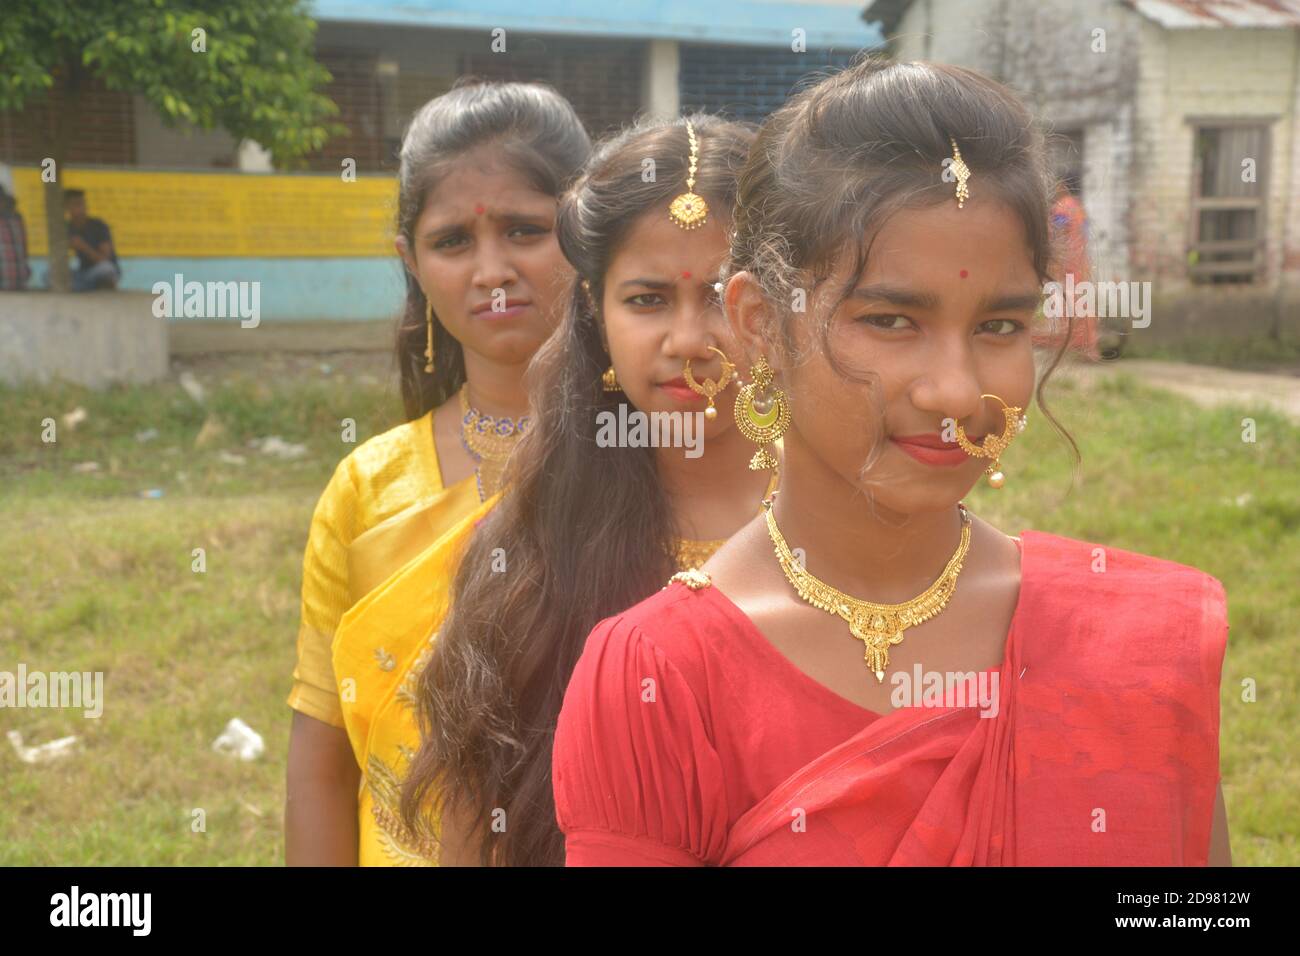 Nahaufnahme von drei Teenager-Mädchen in Indien tragen Sari goldenen Nasenring Maang Tikka Halskette Ohrringe mit Make-up, selektive Fokussierung Stockfoto